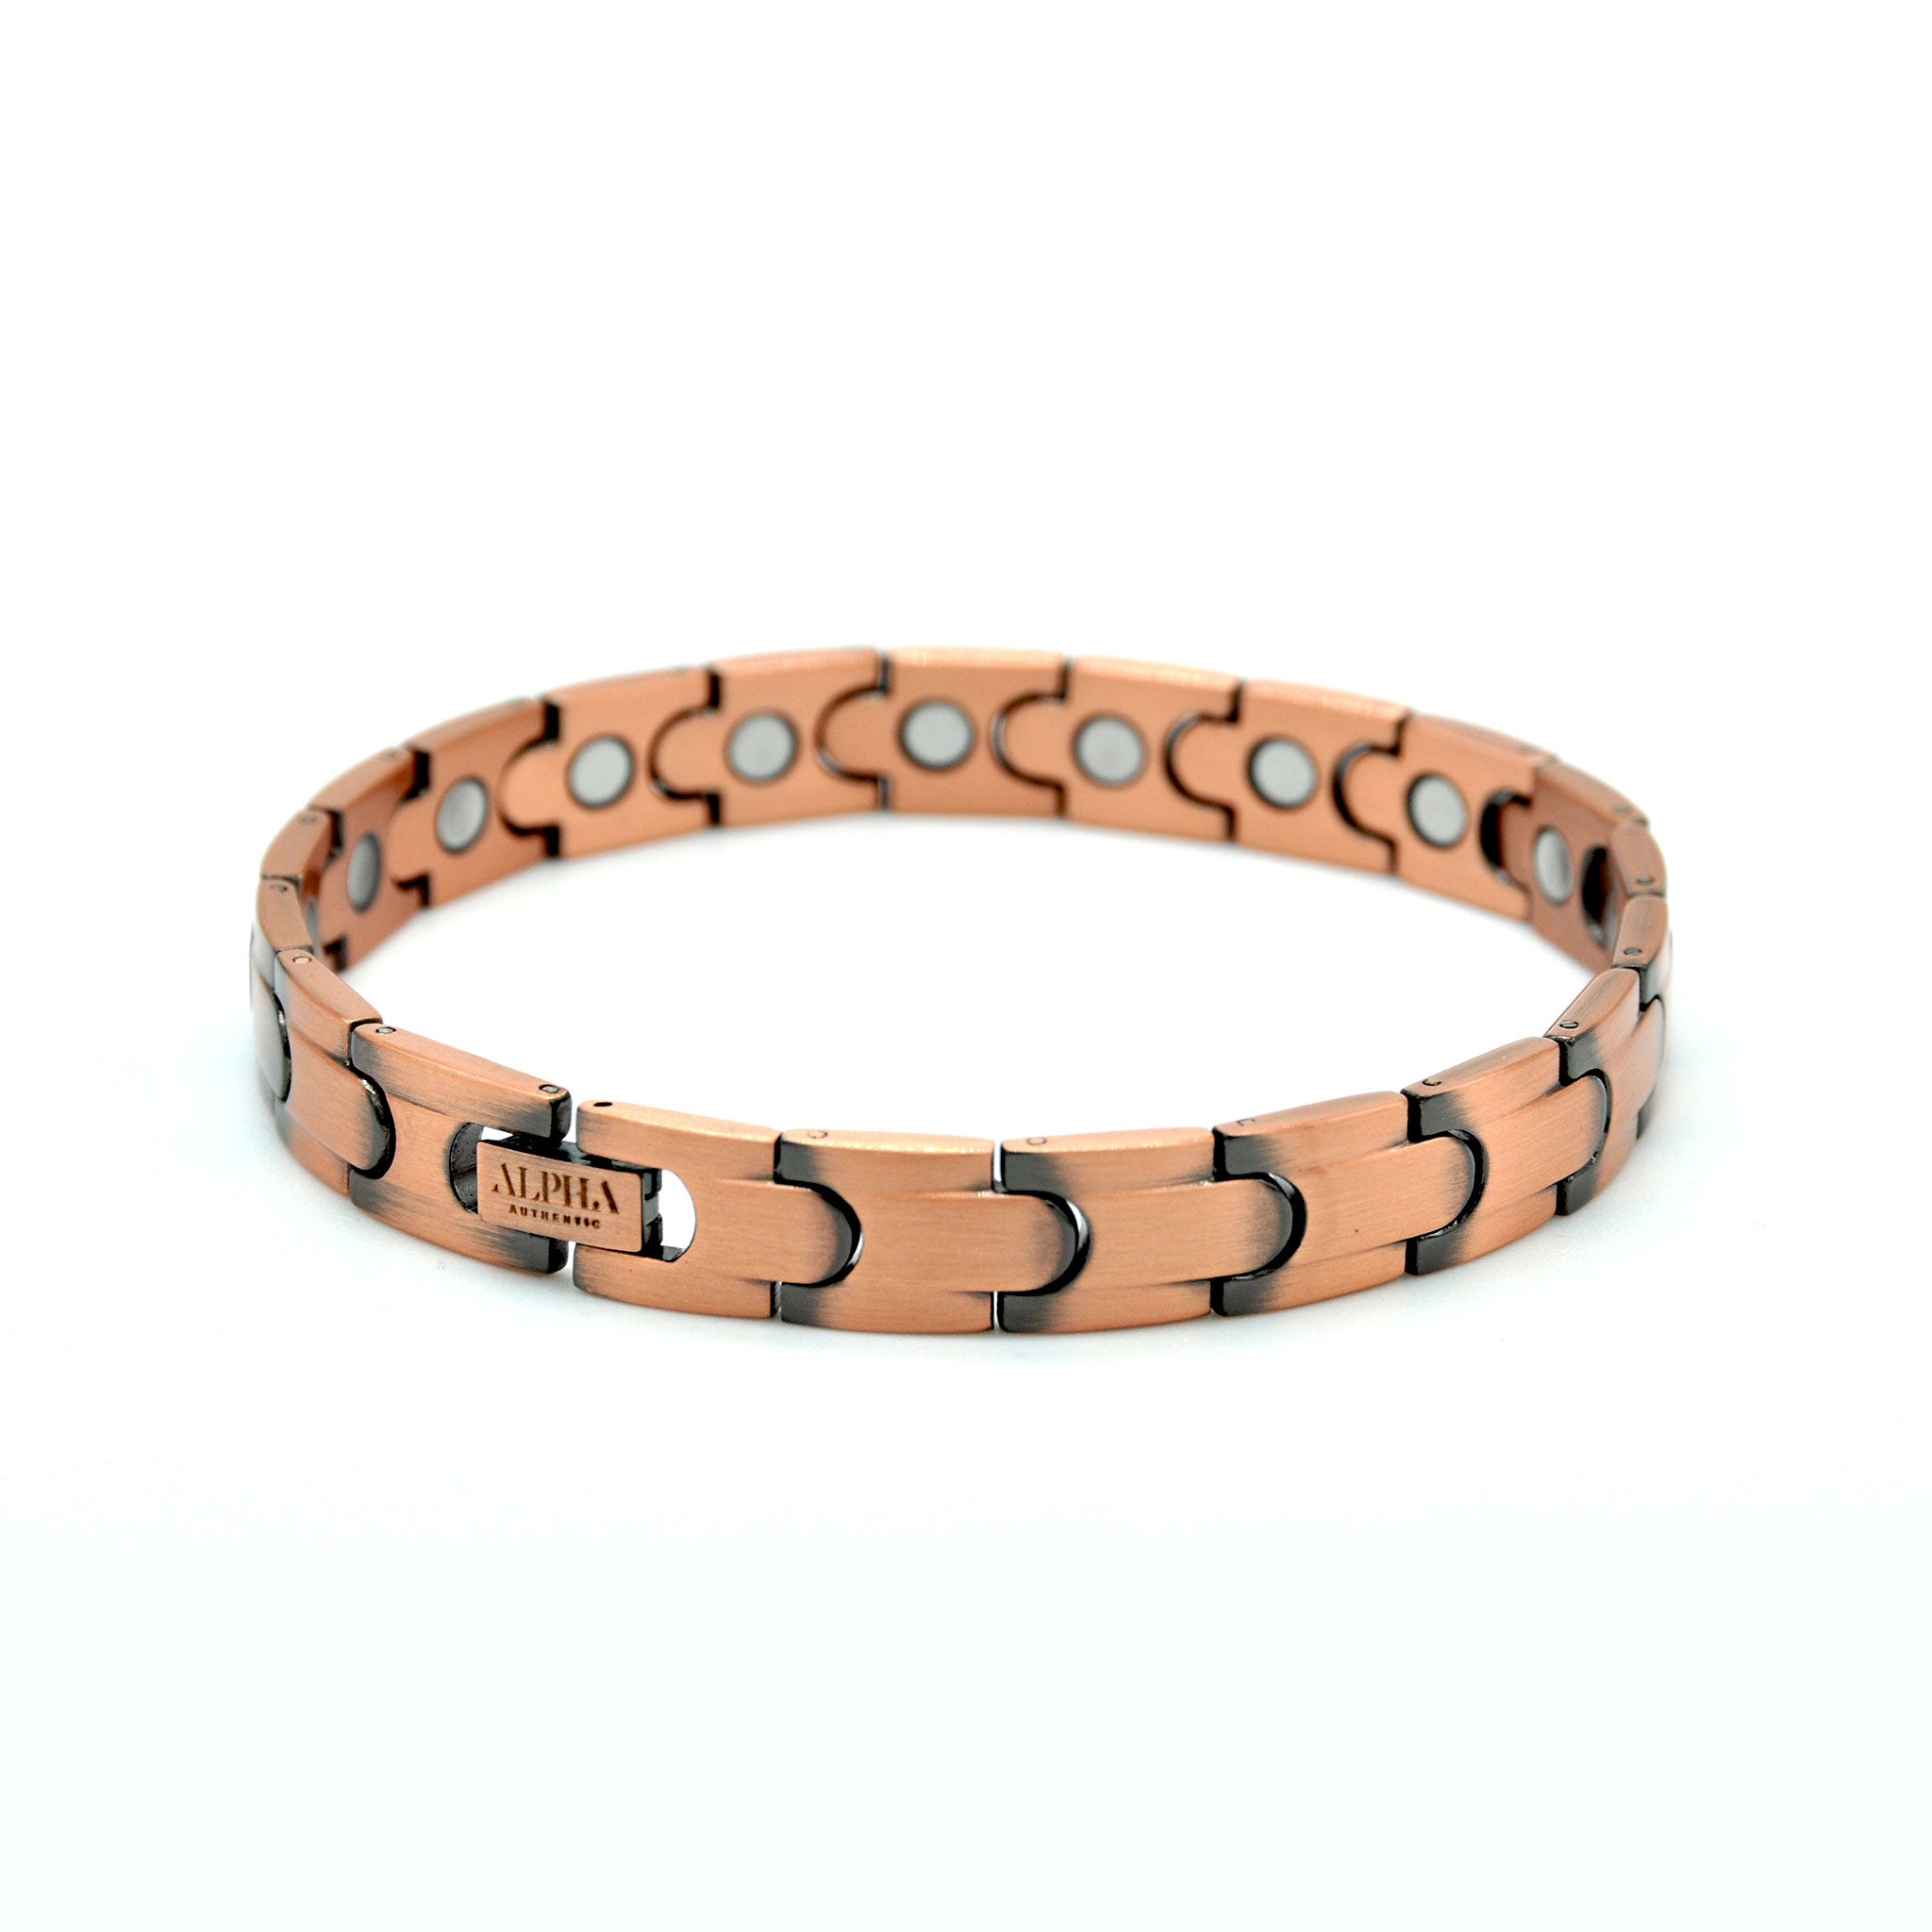 Mens copper bracelet best seller